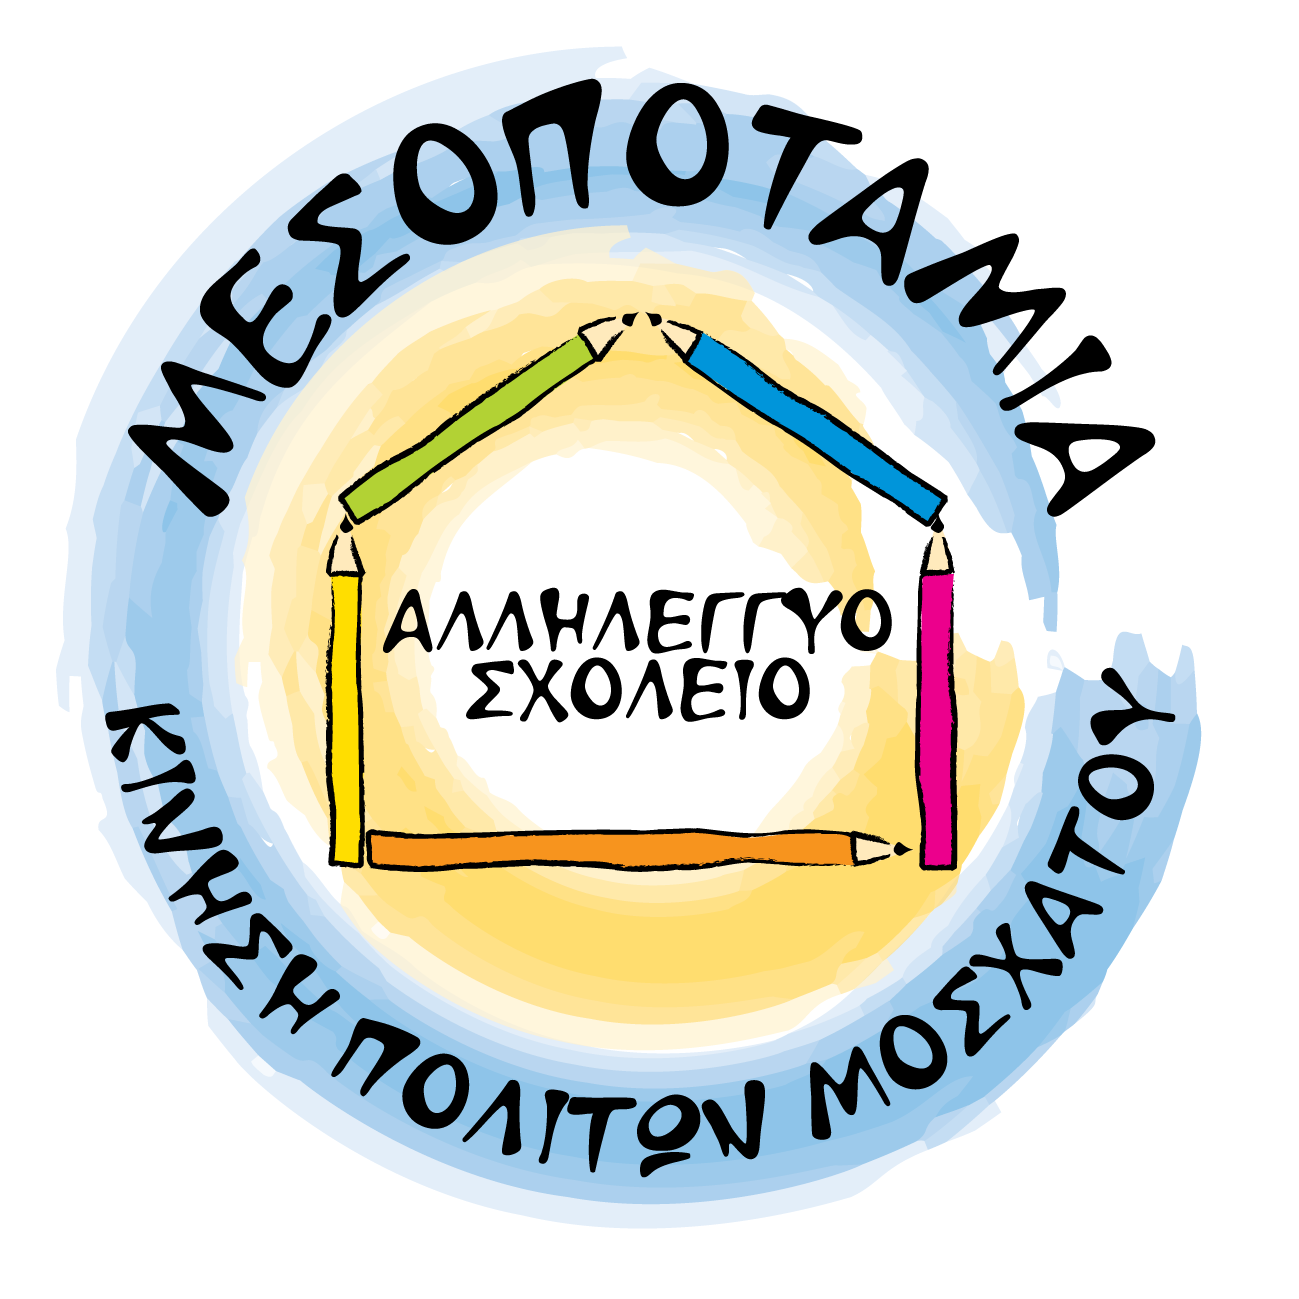 Αλληλέγγυο Σχολείο Μεσοποταμίας | Σύνδεση χρήστη logo